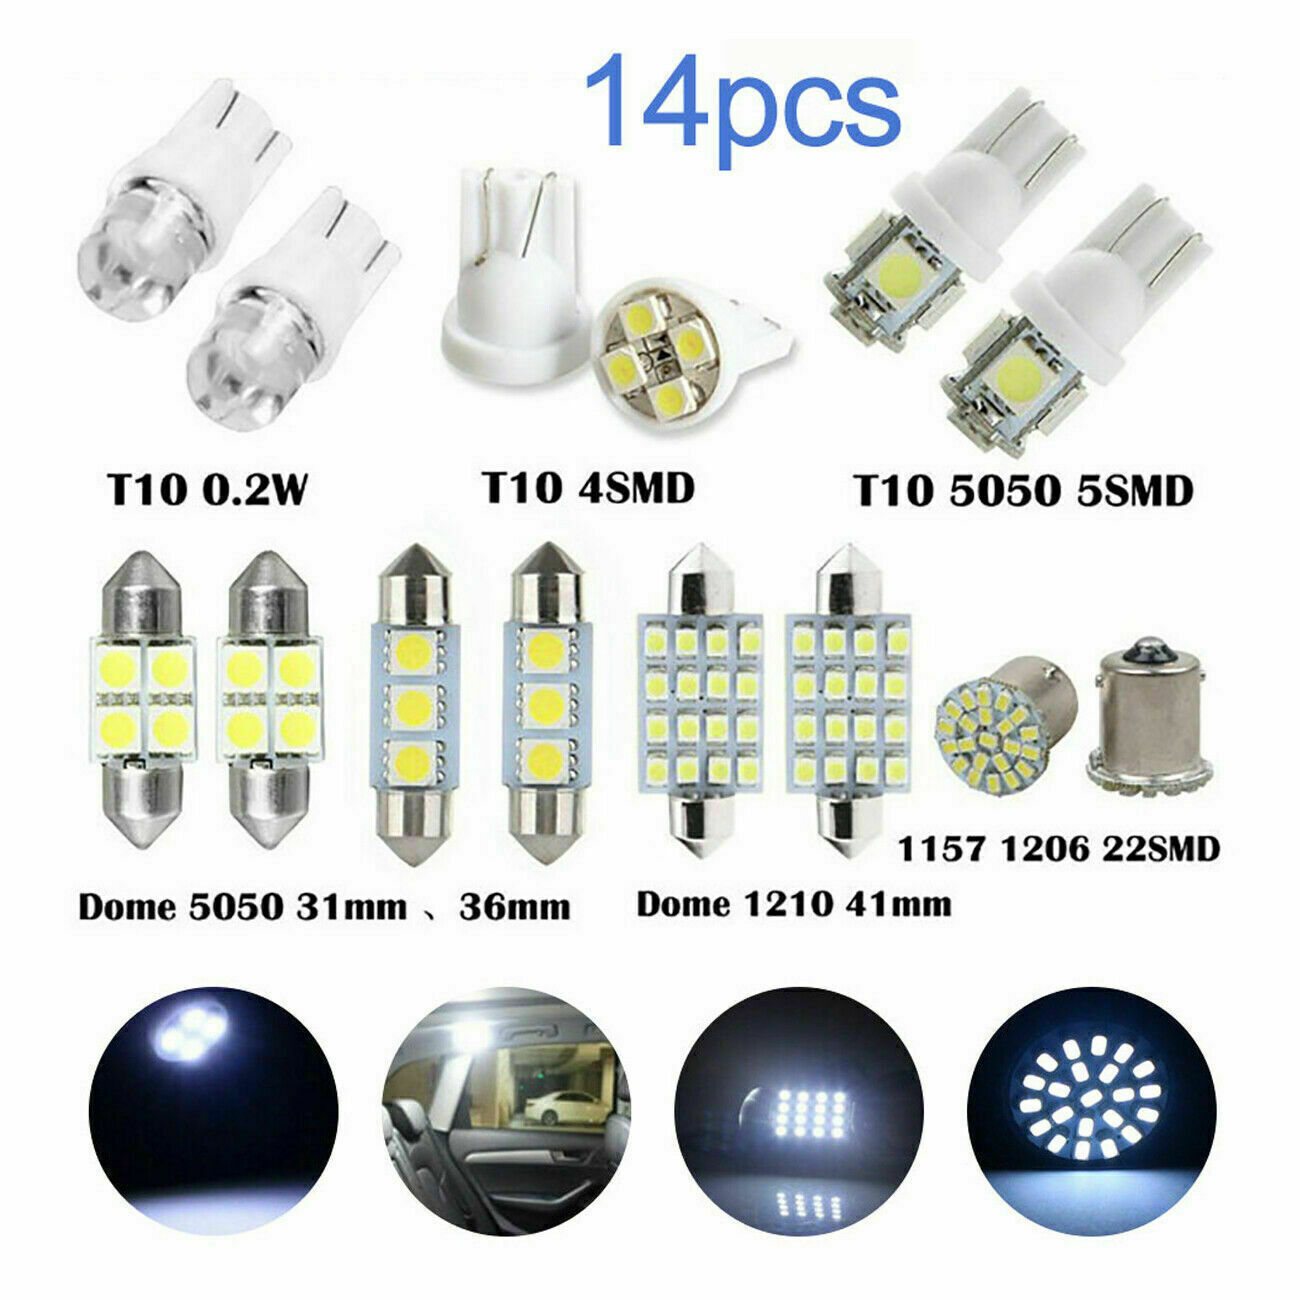 14pcs T10 LED Light Car Bulb Auto Lamp For Interior Dome Map Set Inside 6K White